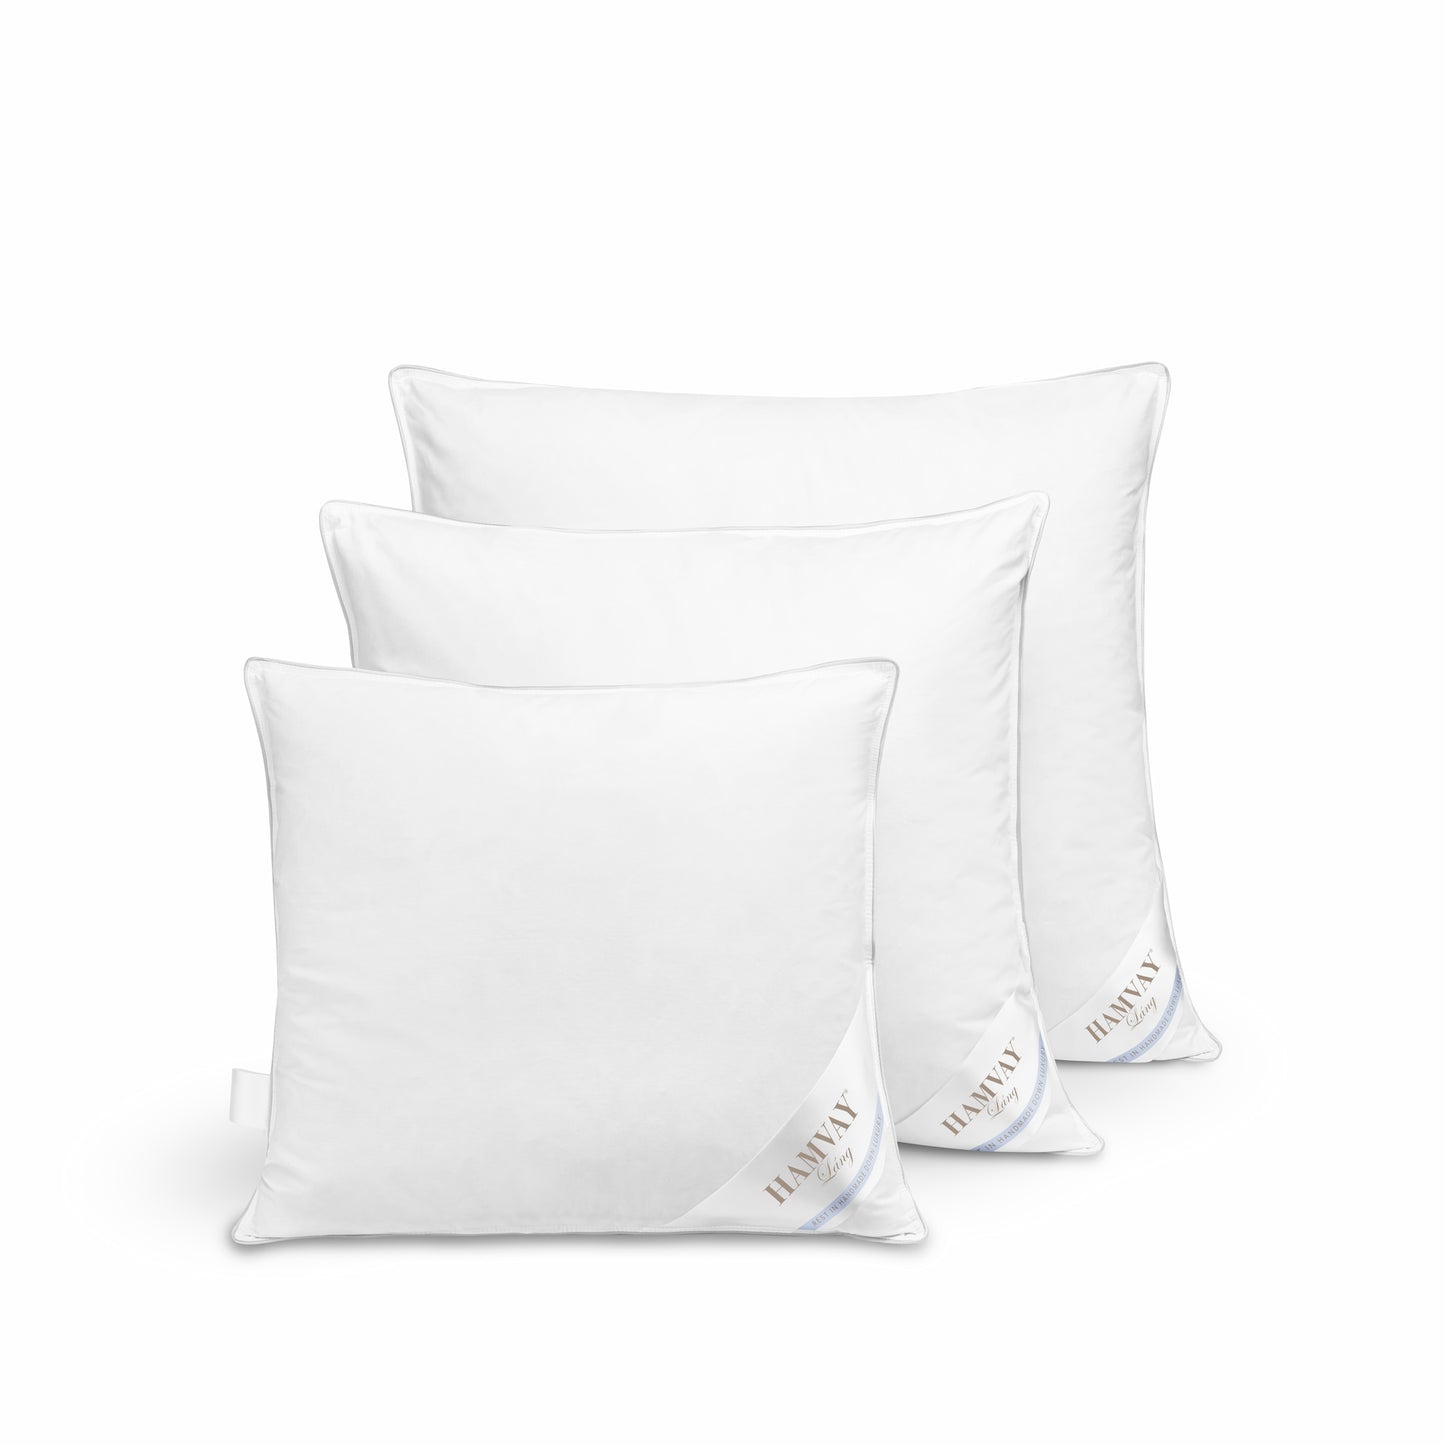 Garnet Hill Pillow Insert, 16x16 Goose feather pillow insert Sewing crafts